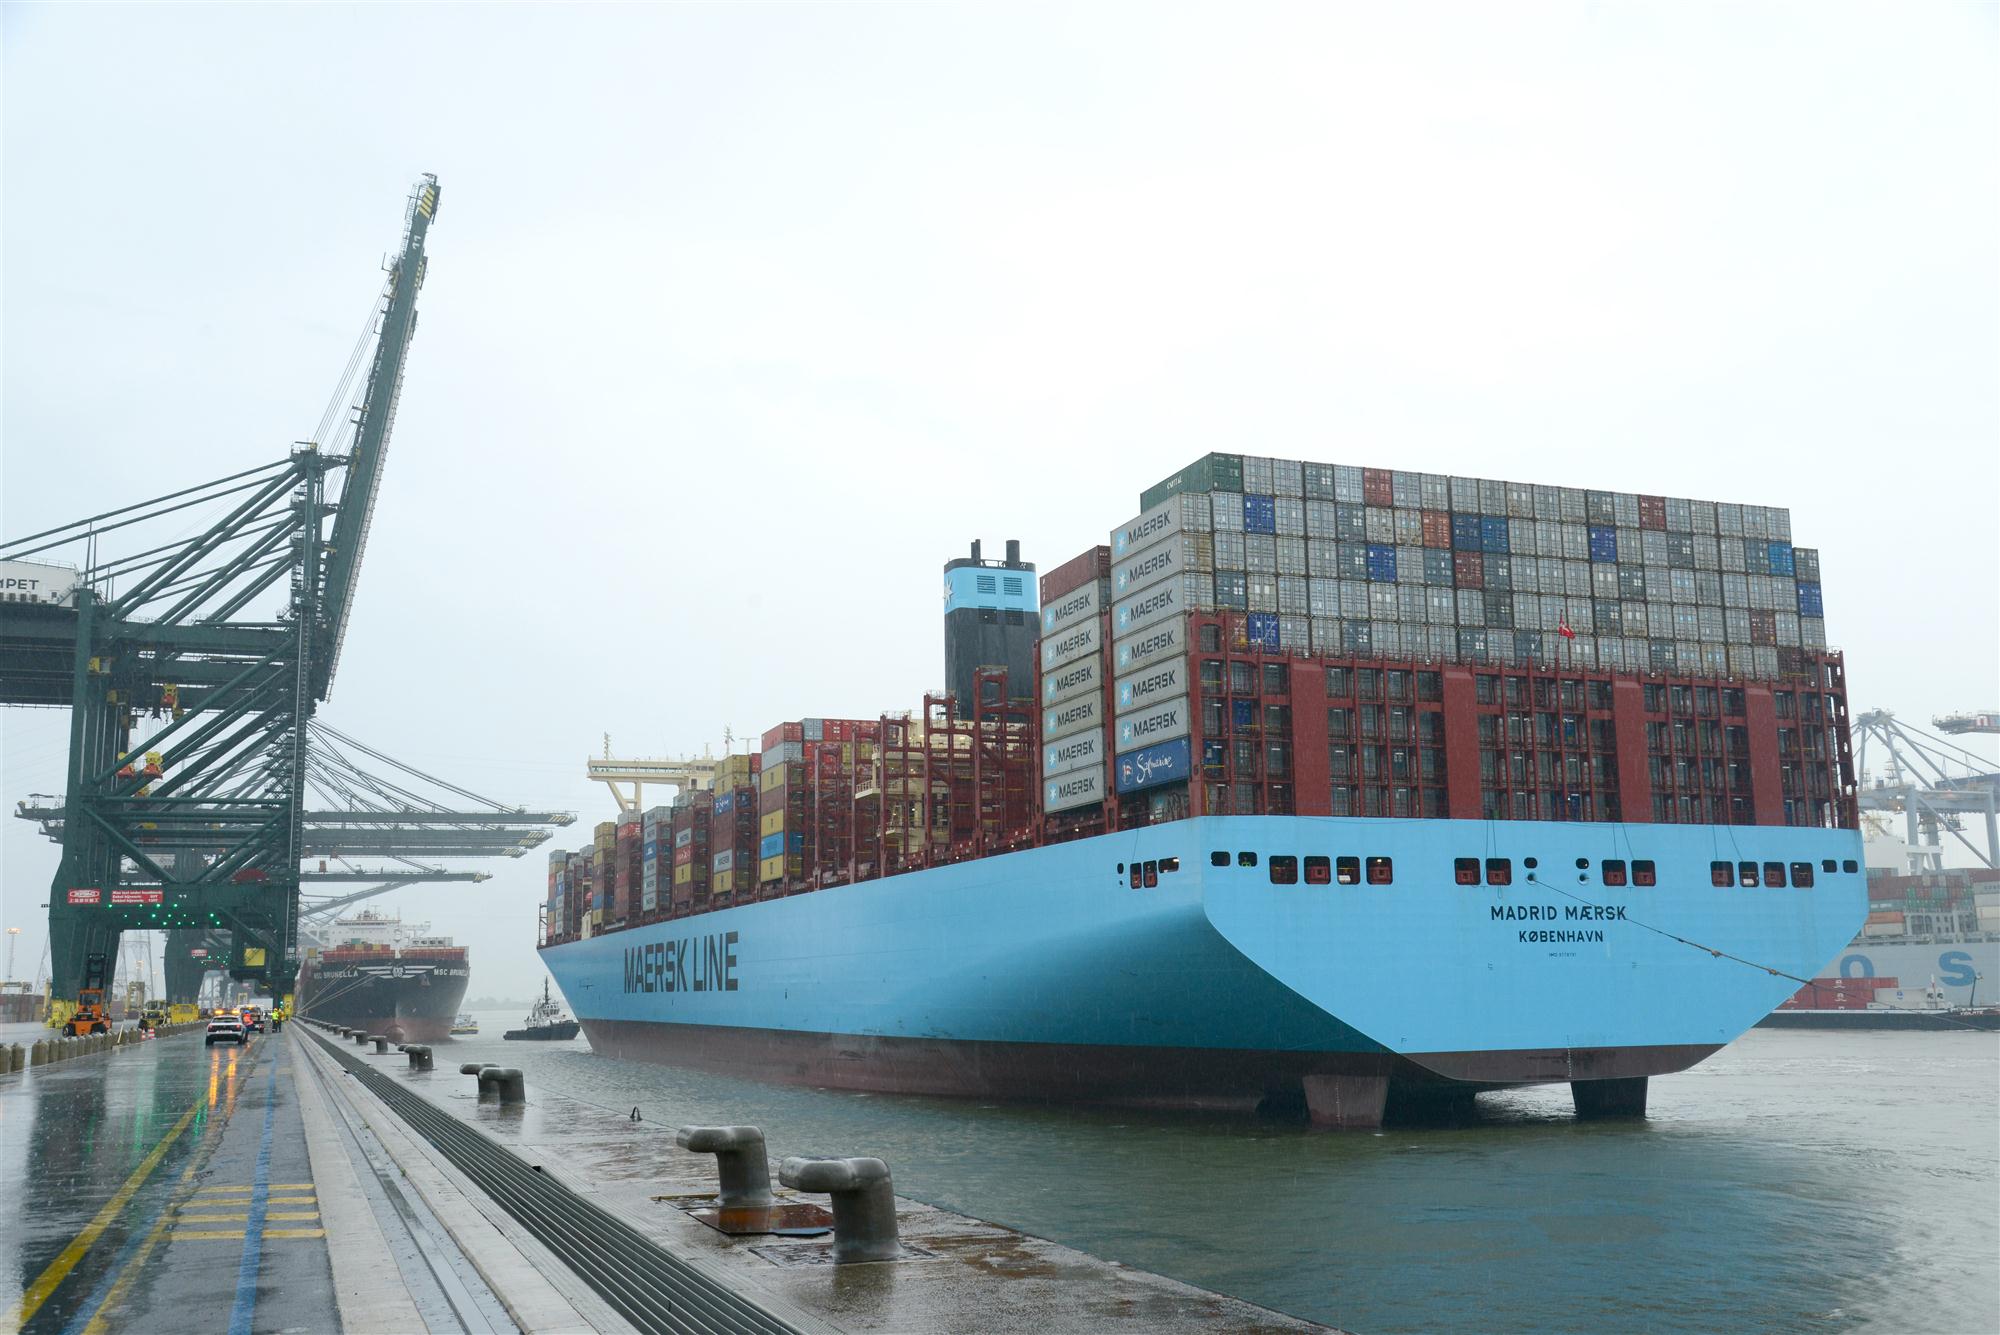 Self Photos / Files - Port of Antwerp Madrid Maersk